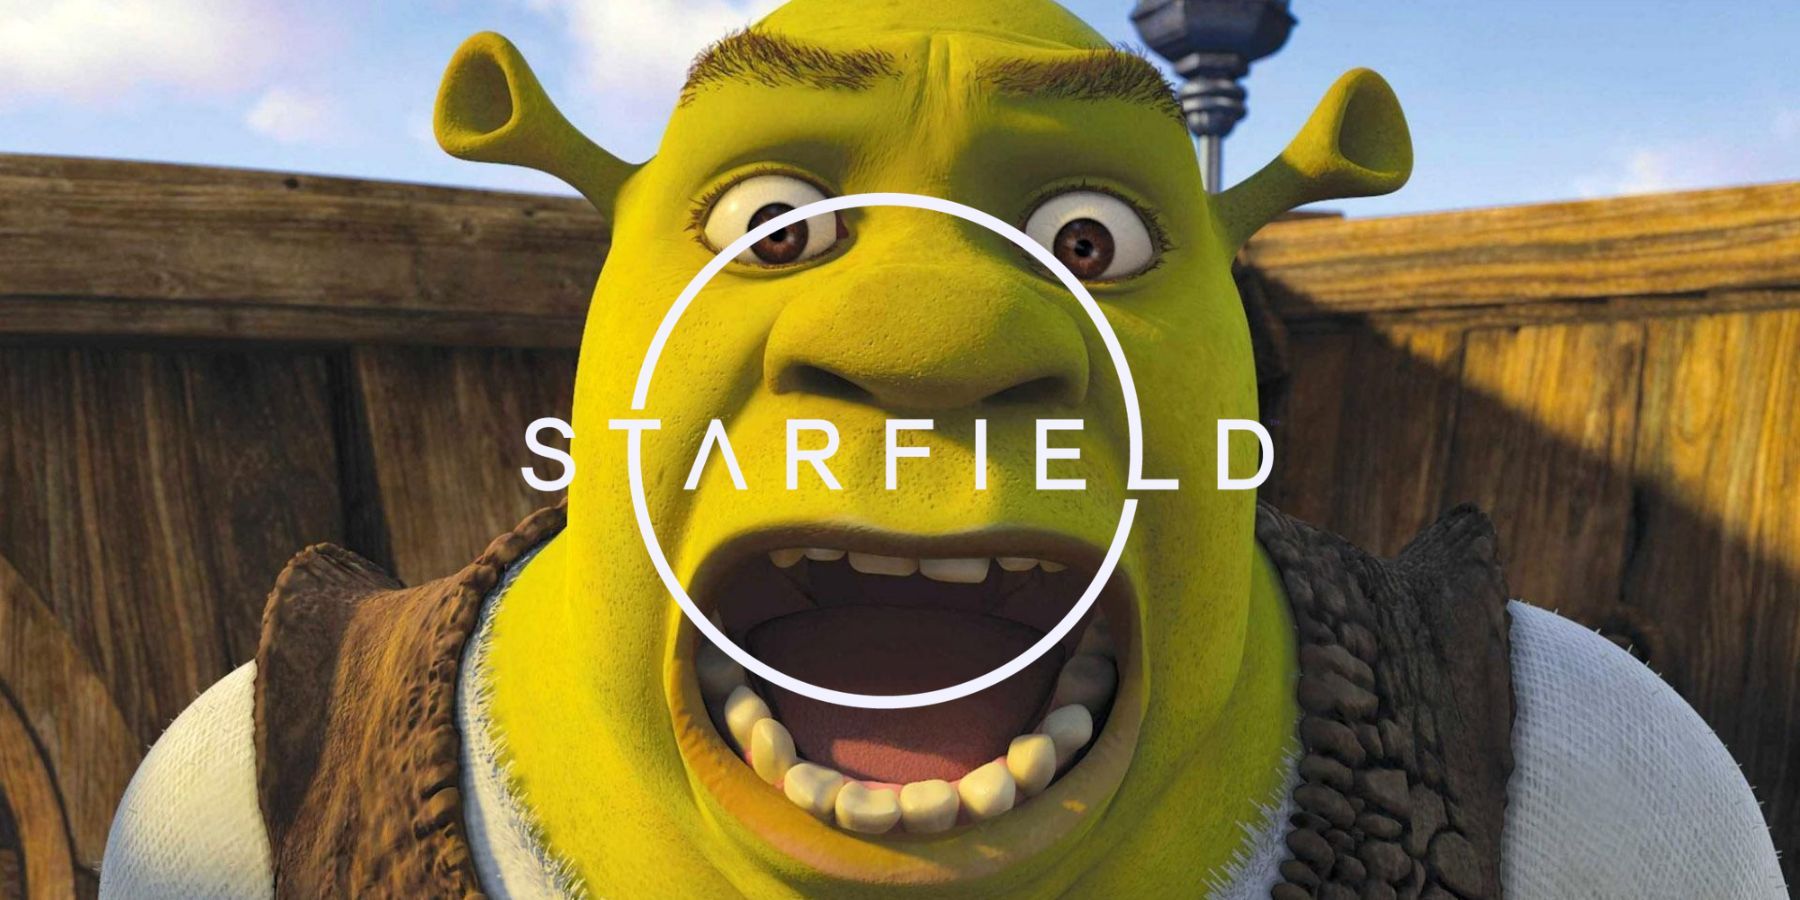 A Starfield player builds Shrek